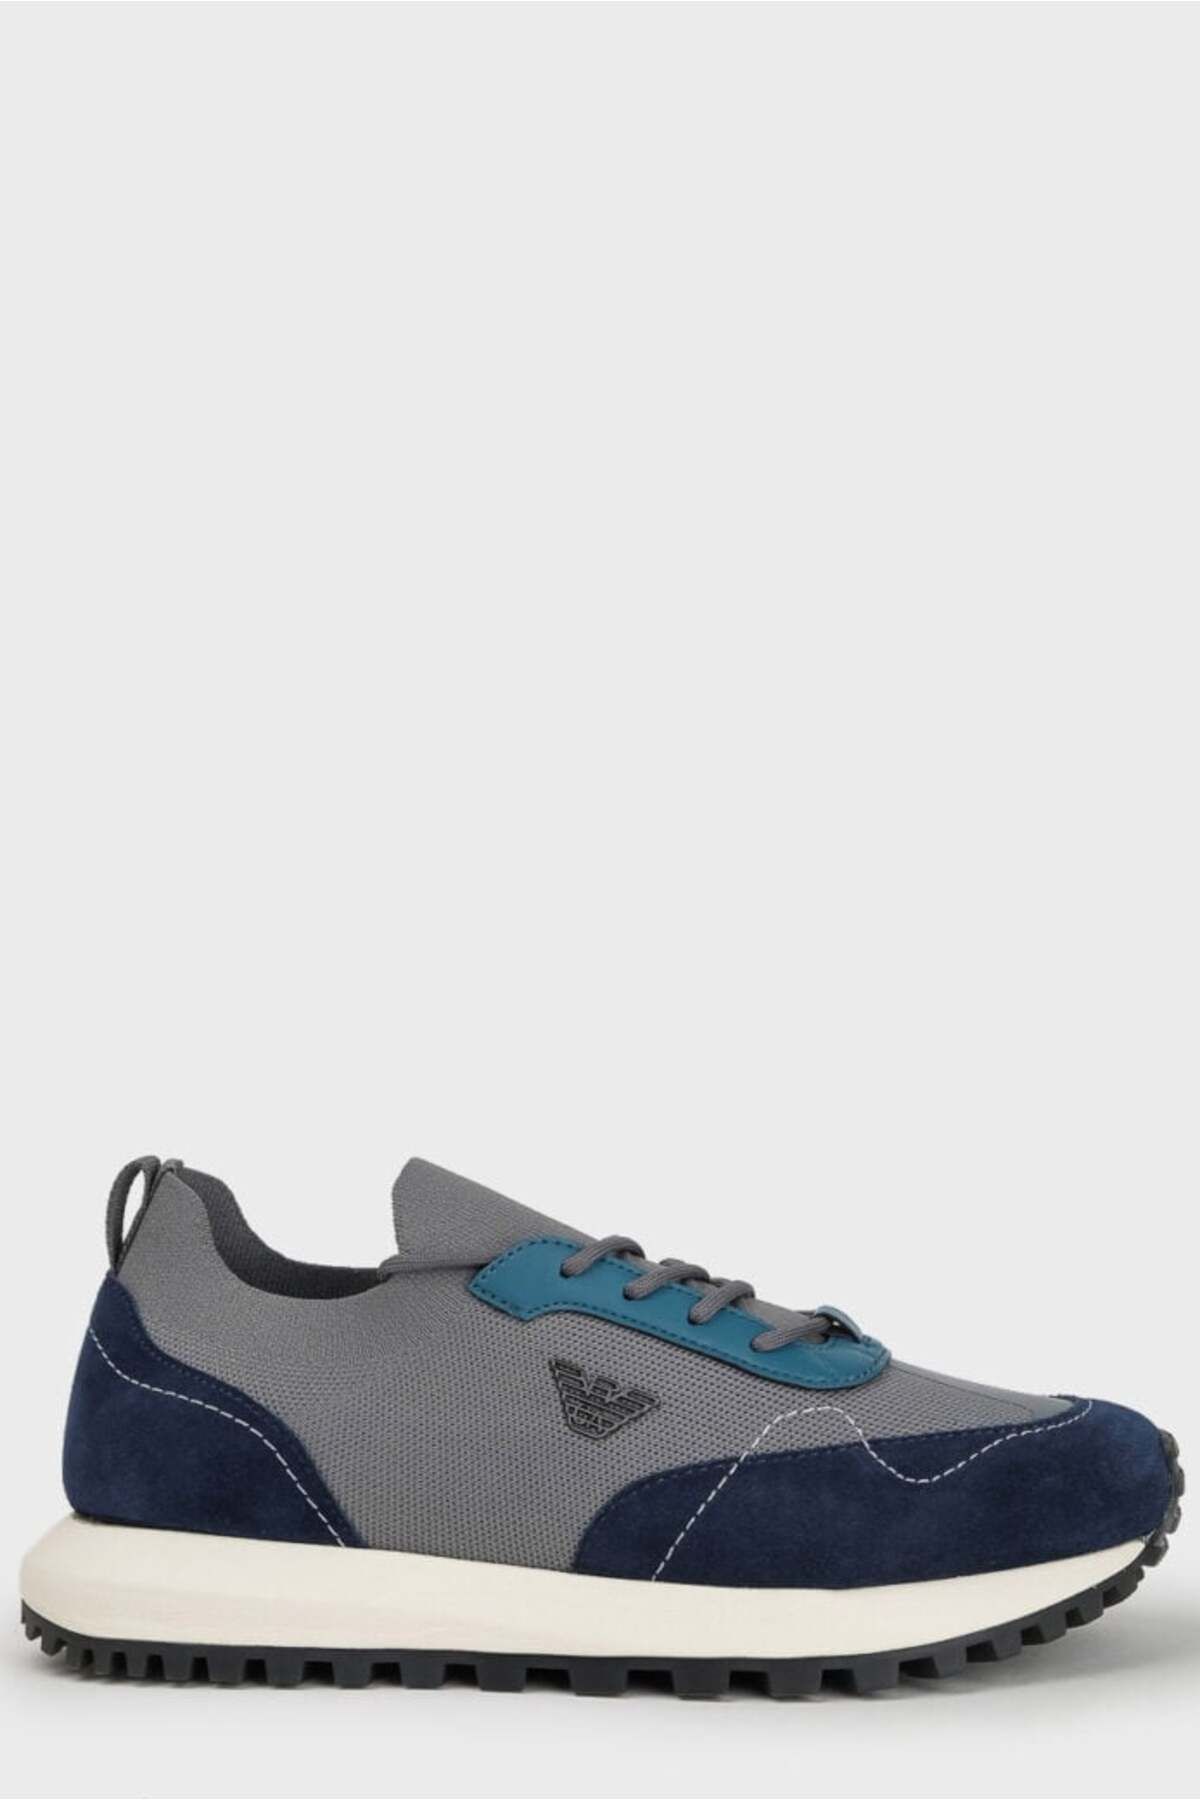 Emporio Armani Erkek Marka Logolu Bağcıklı Kaydırmaz Tabanlı Günlük Gri1 Sneaker X4X659 XR105-T861